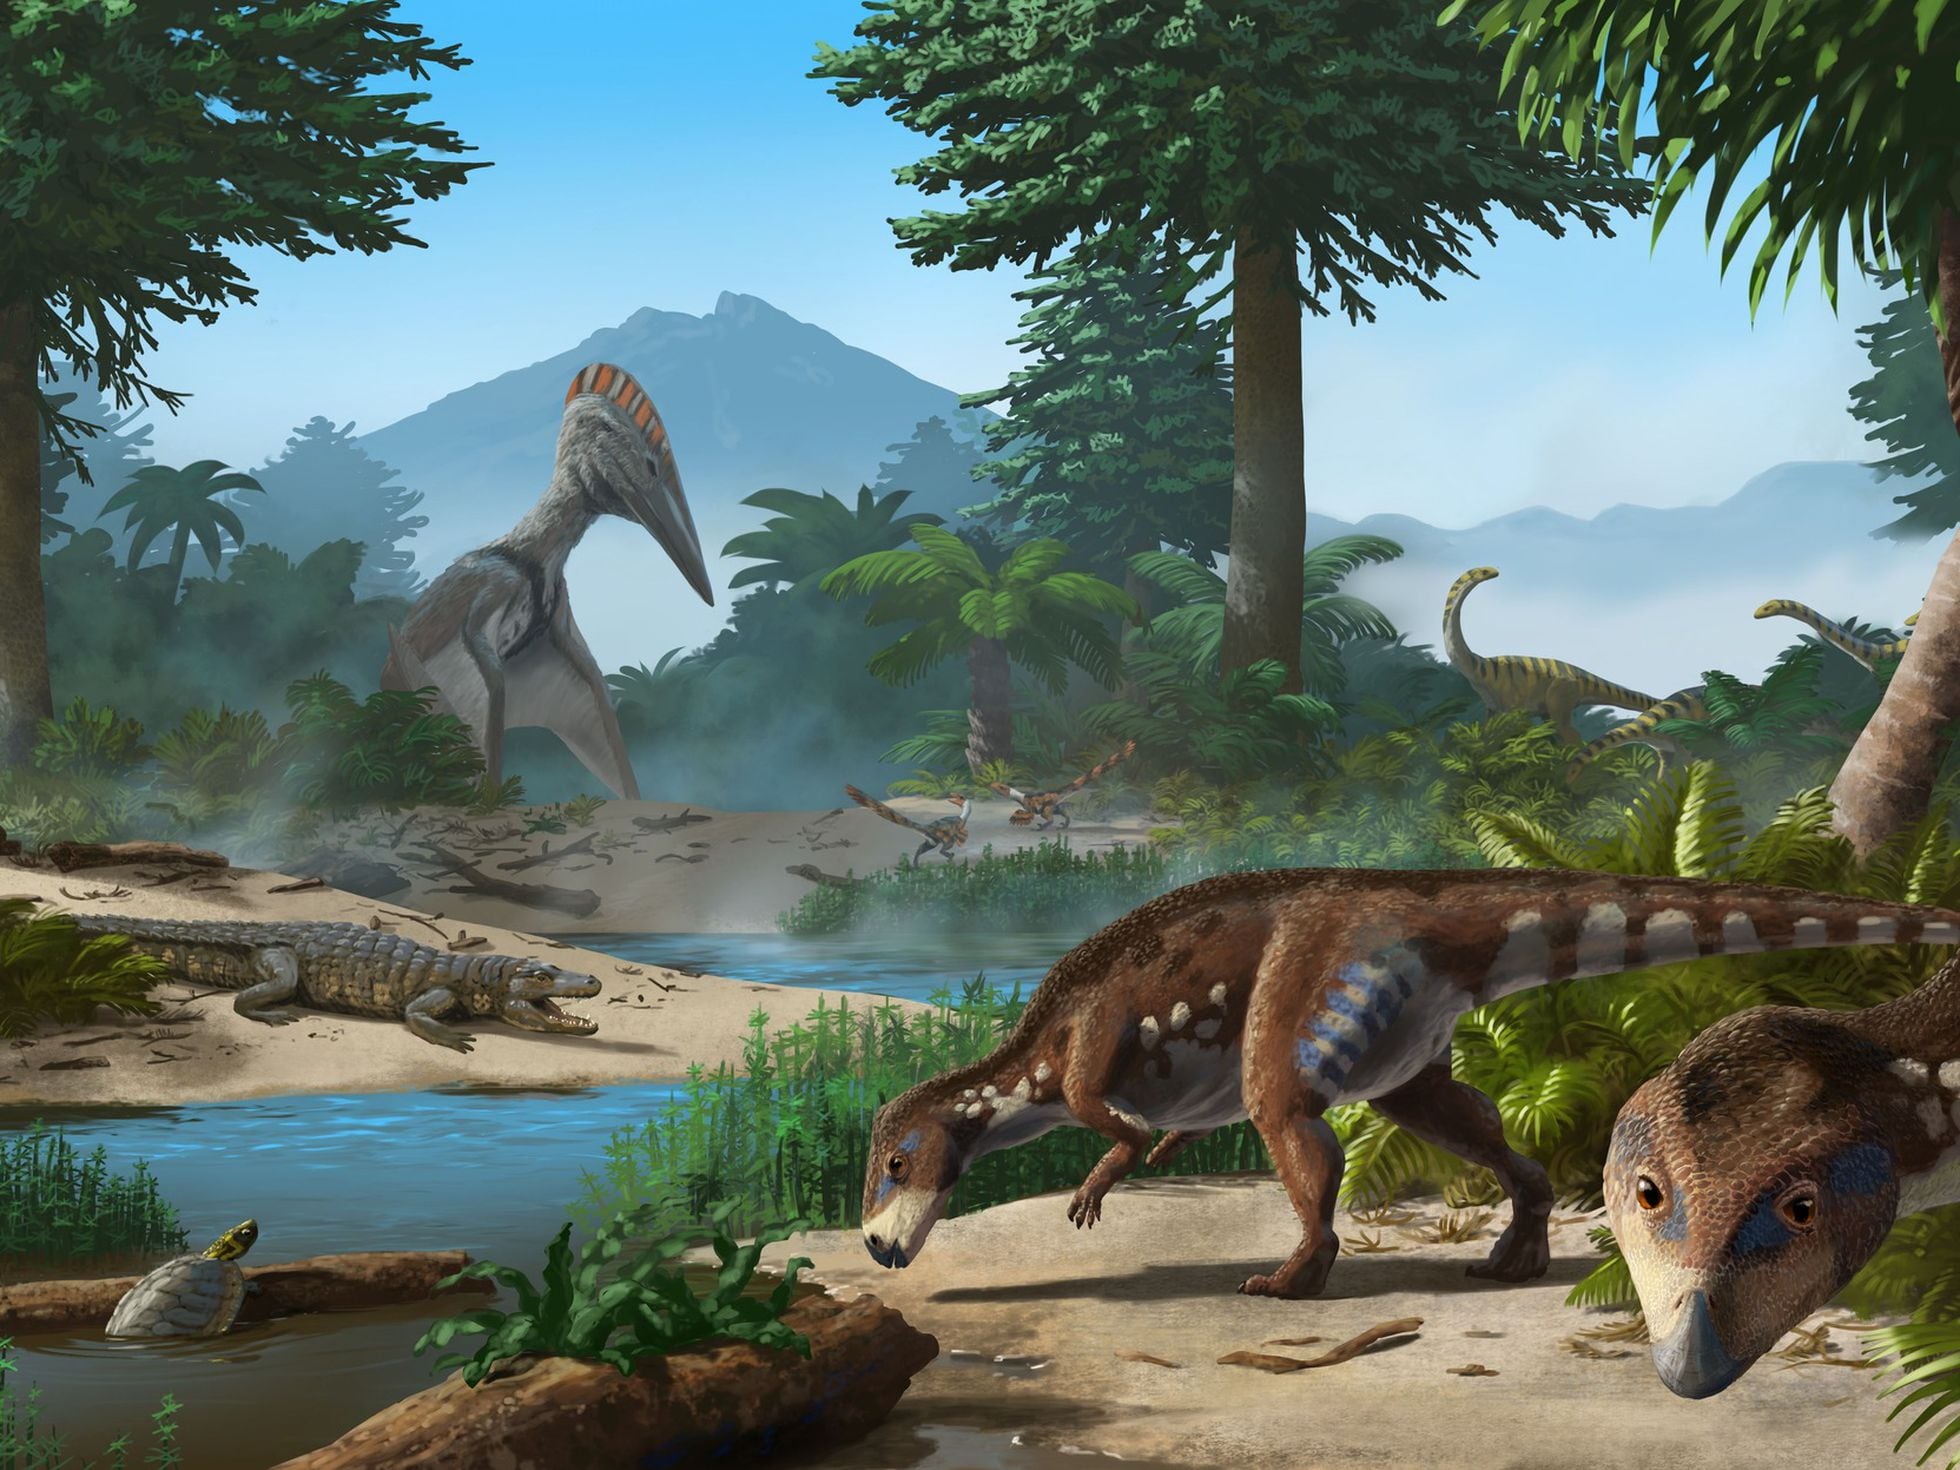 Transylvanosaurus: Hallan en Transilvania una nueva especie de dinosaurio  enano herbívoro que vivió hace 70 millones de años | Ciencia | EL PAÍS